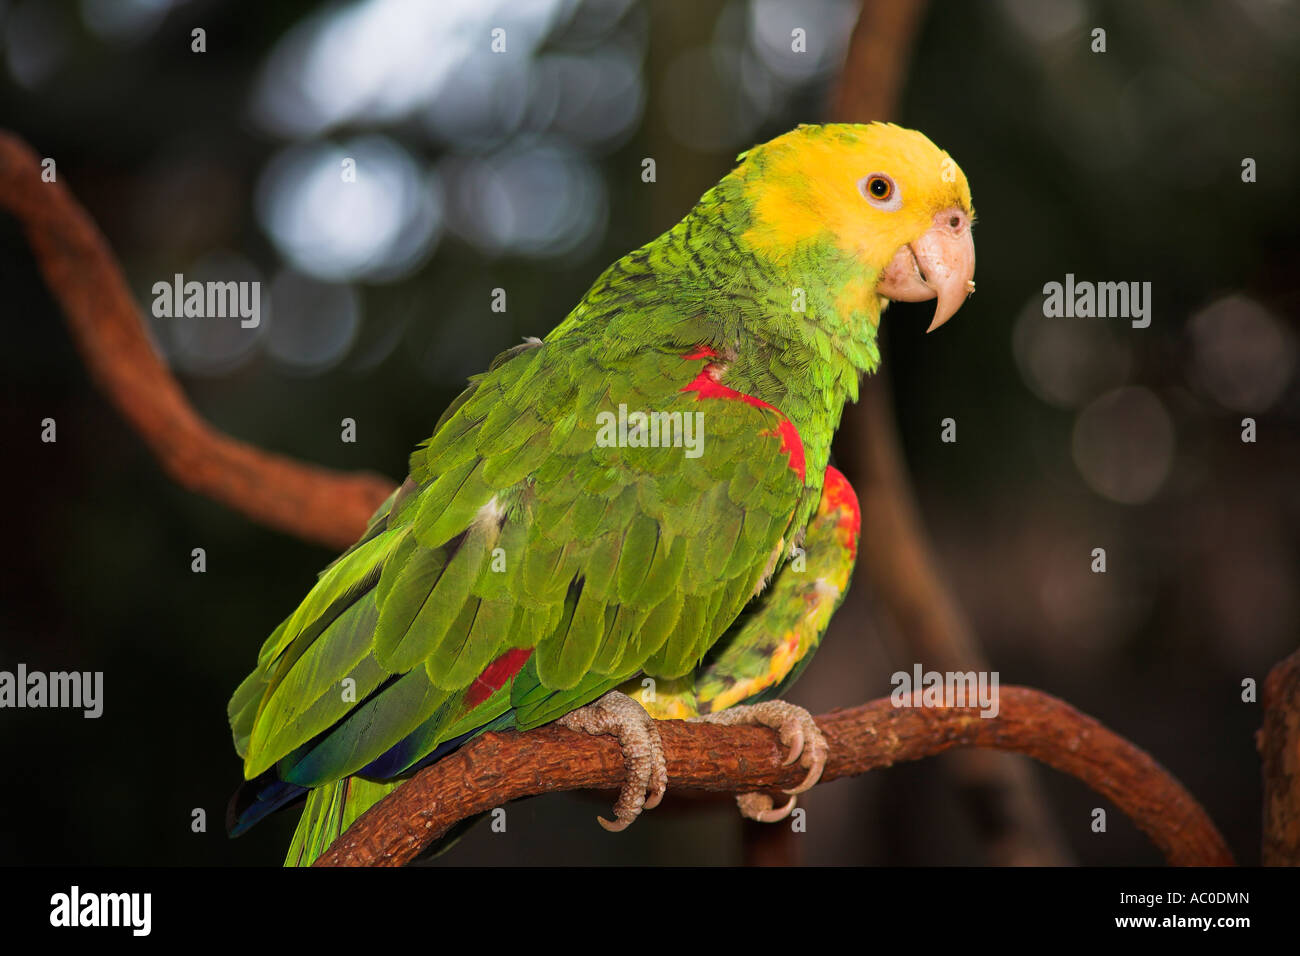 Yellow headed parrot, Loro Cabeza Amarilla, Amazona Oratrix, perched on a branch, Mexico Stock Photo